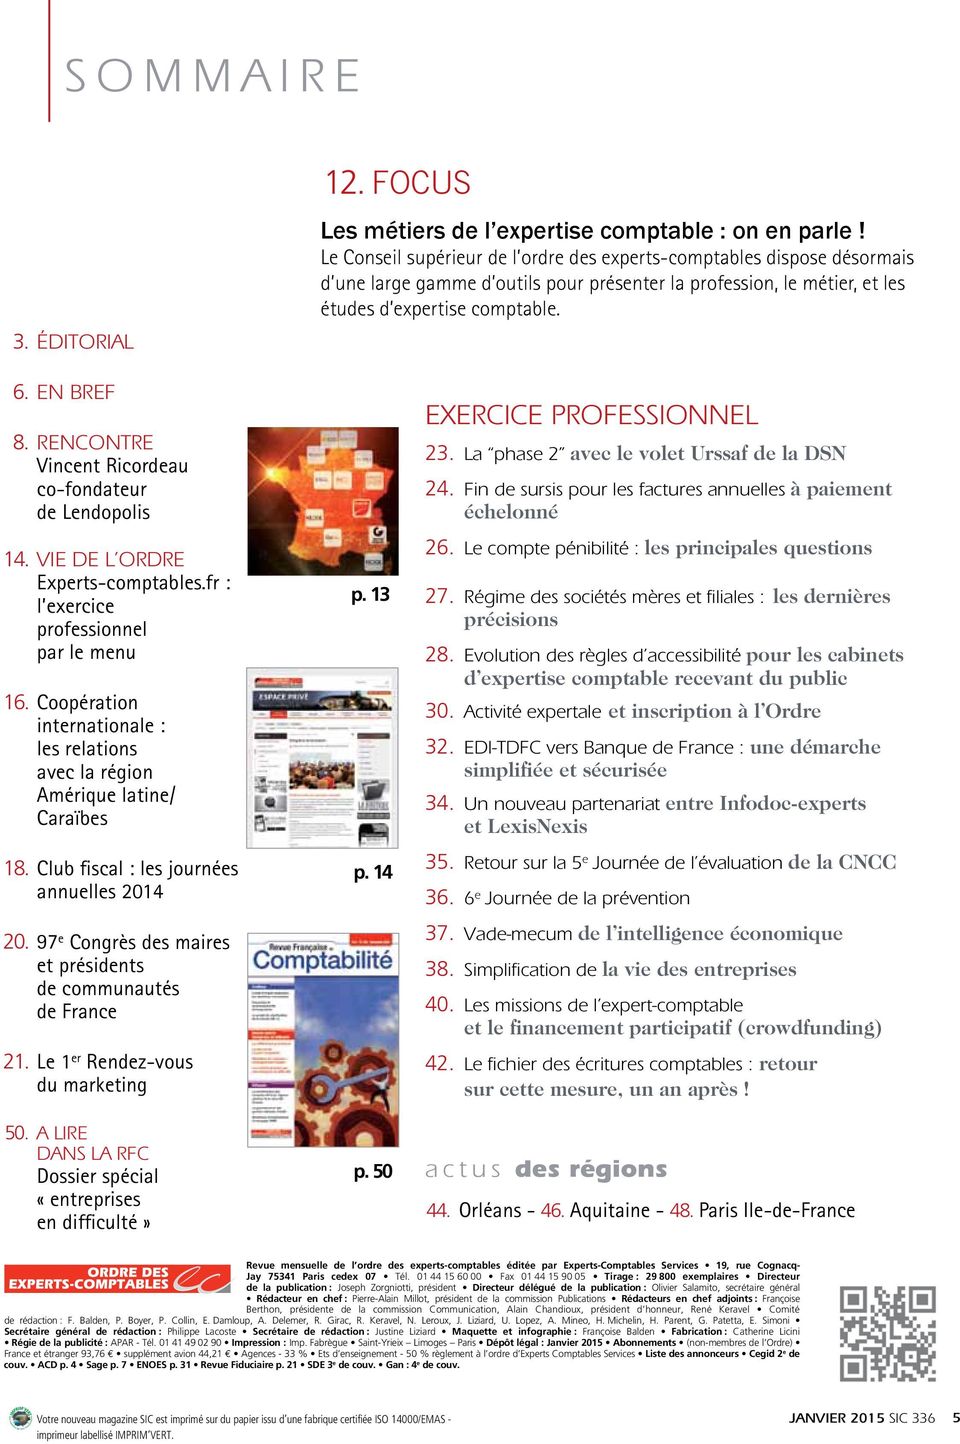 RENCONTRE Vincent Ricordeau co-fondateur de Lendopolis 14. VIE DE L ORDRE Experts-comptables.fr : l exercice professionnel par le menu 16.